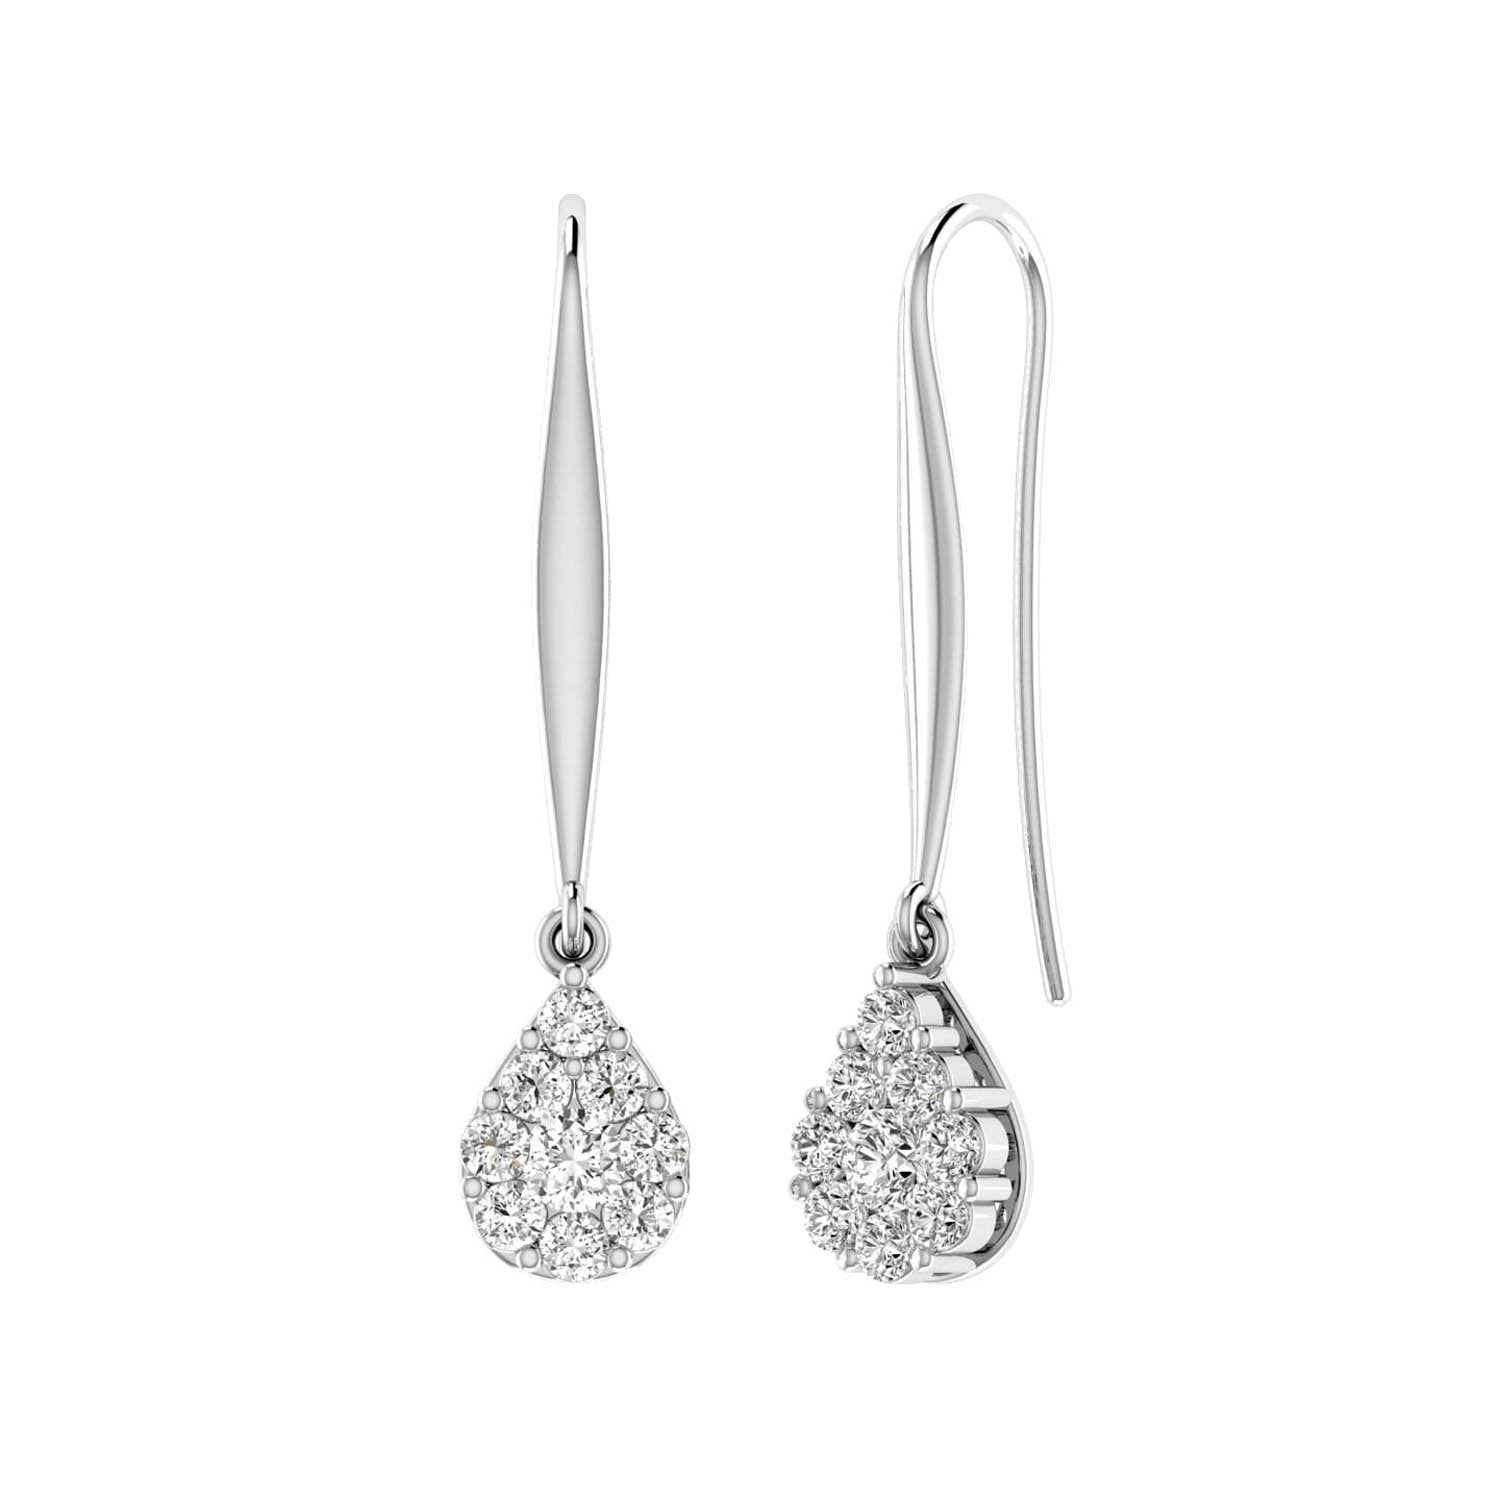 Tear Drop Hook Diamond Earrings with 0.15ct Diamonds in 9K White Gold - 9WTDSH15GH